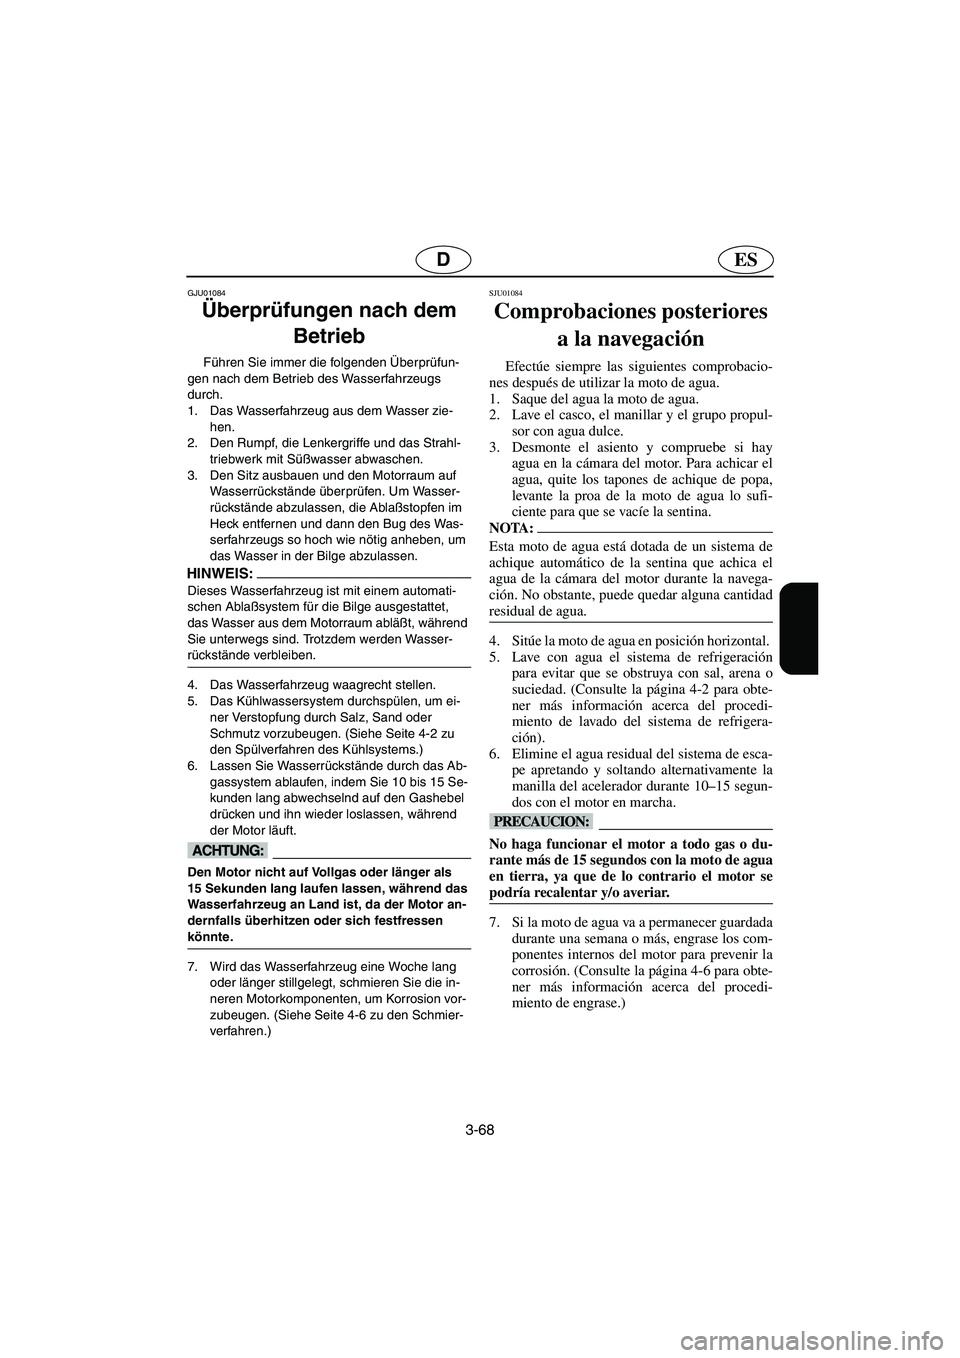 YAMAHA GP800R 2003  Manuale de Empleo (in Spanish) 3-68
ESD
GJU01084 
Überprüfungen nach dem 
Betrieb  
Führen Sie immer die folgenden Überprüfun-
gen nach dem Betrieb des Wasserfahrzeugs 
durch. 
1. Das Wasserfahrzeug aus dem Wasser zie-
hen. 
2